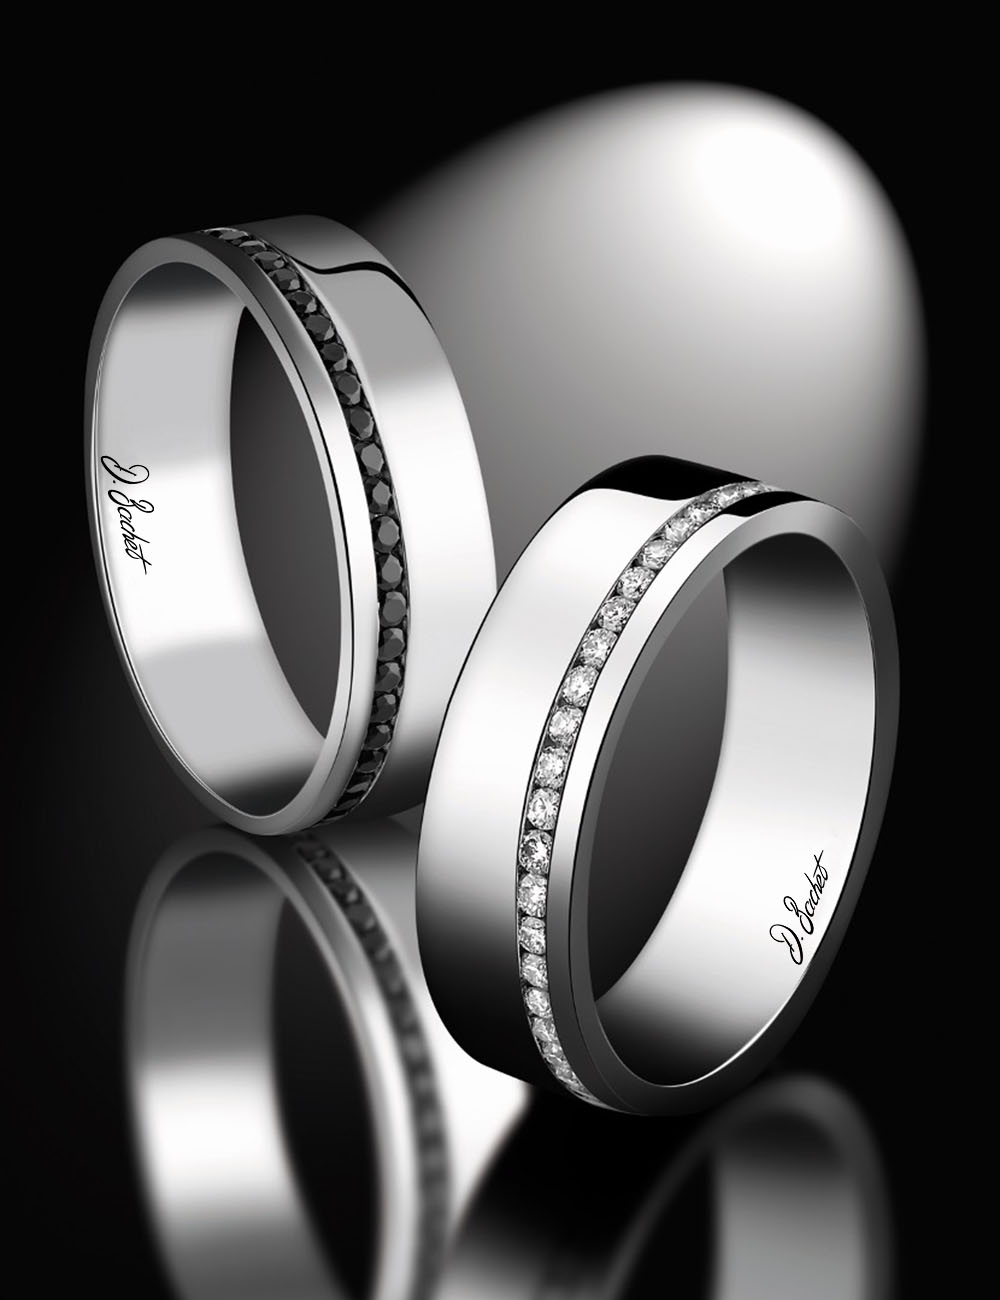 Alliance de mariage confortable de 6 mm avec une conception unique qui réinvente la forme traditionnelle arrondie.